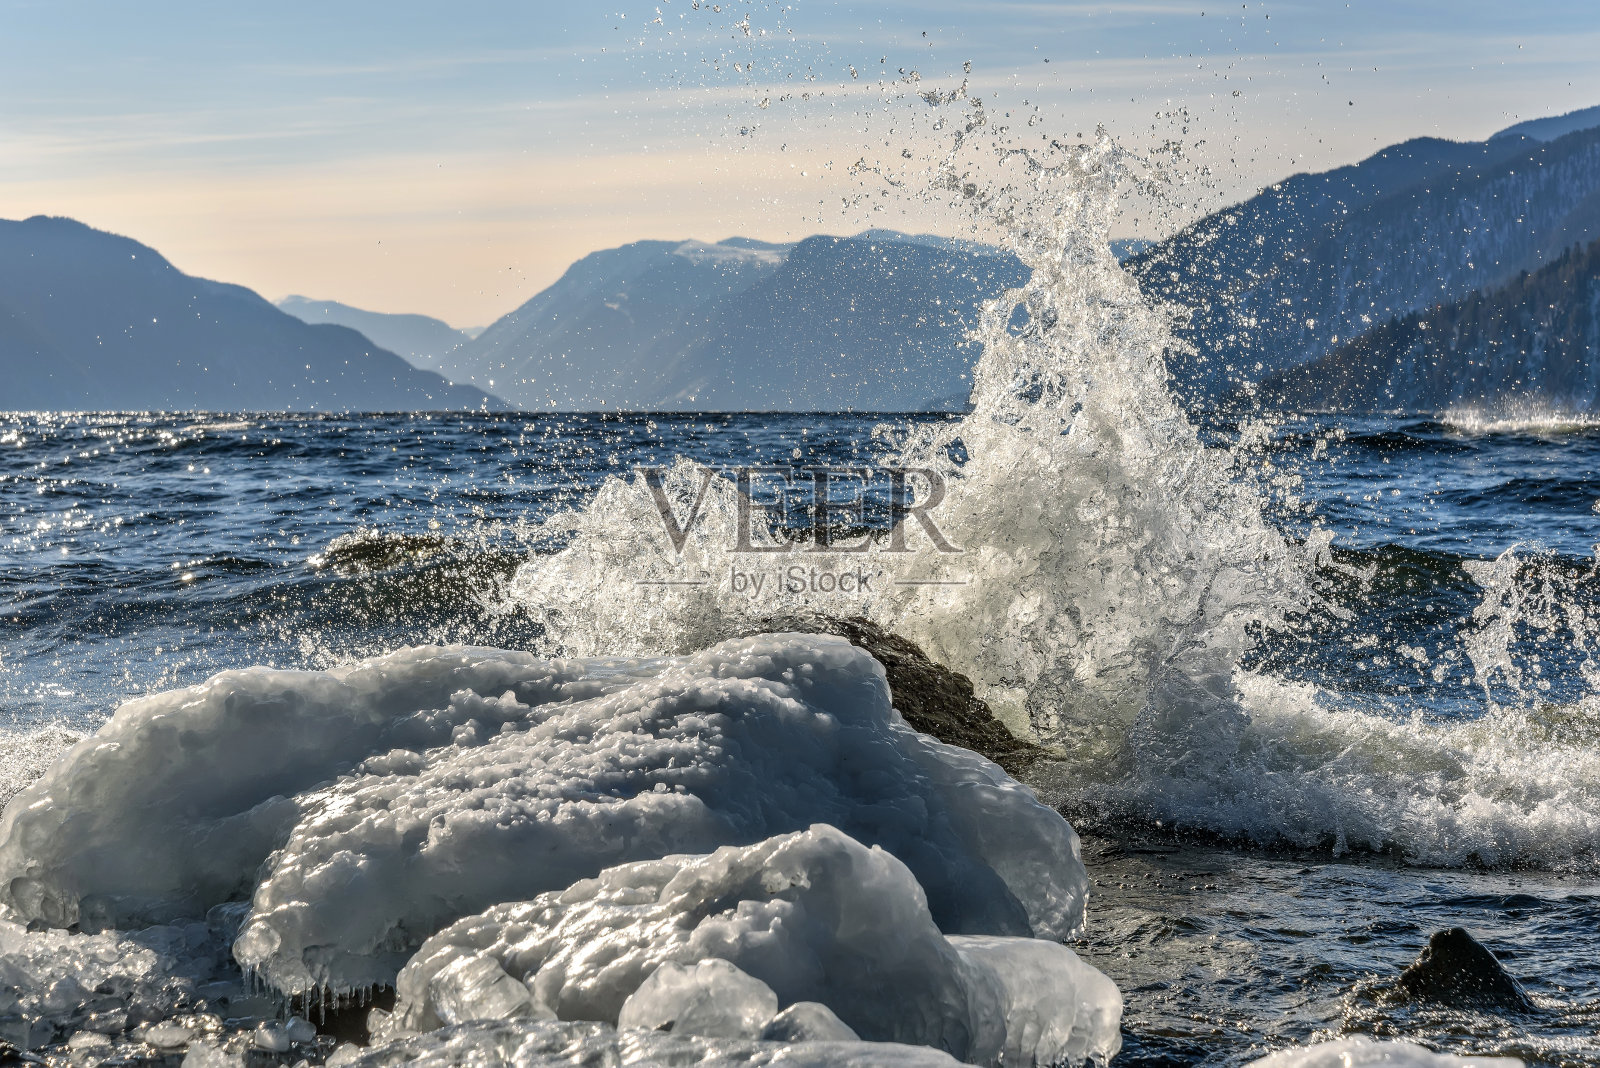 湖面上的群山波浪式地溅起冰块照片摄影图片